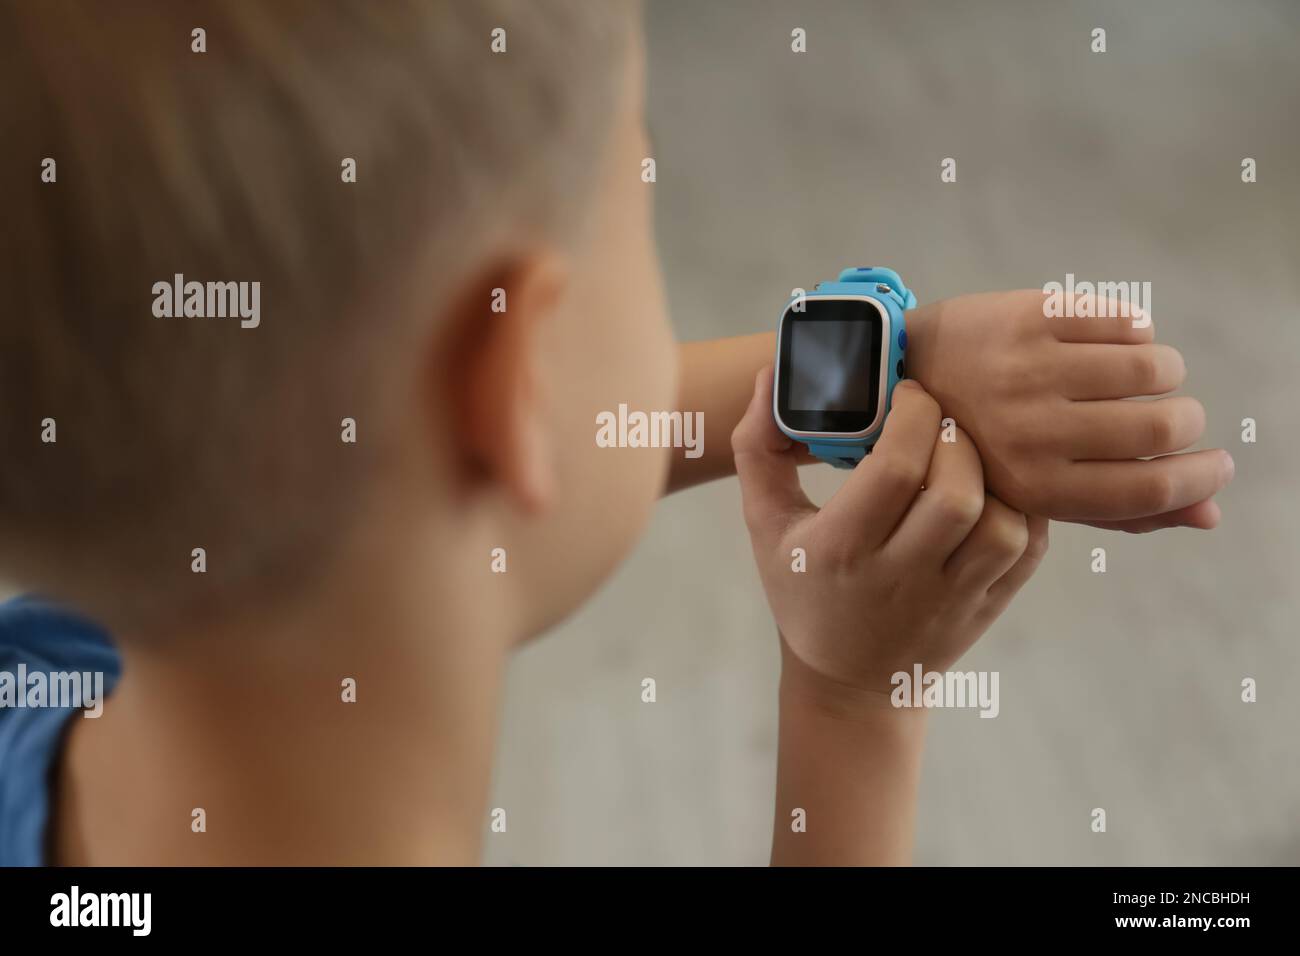 Boy with stylish smart watch, closeup view Stock Photo